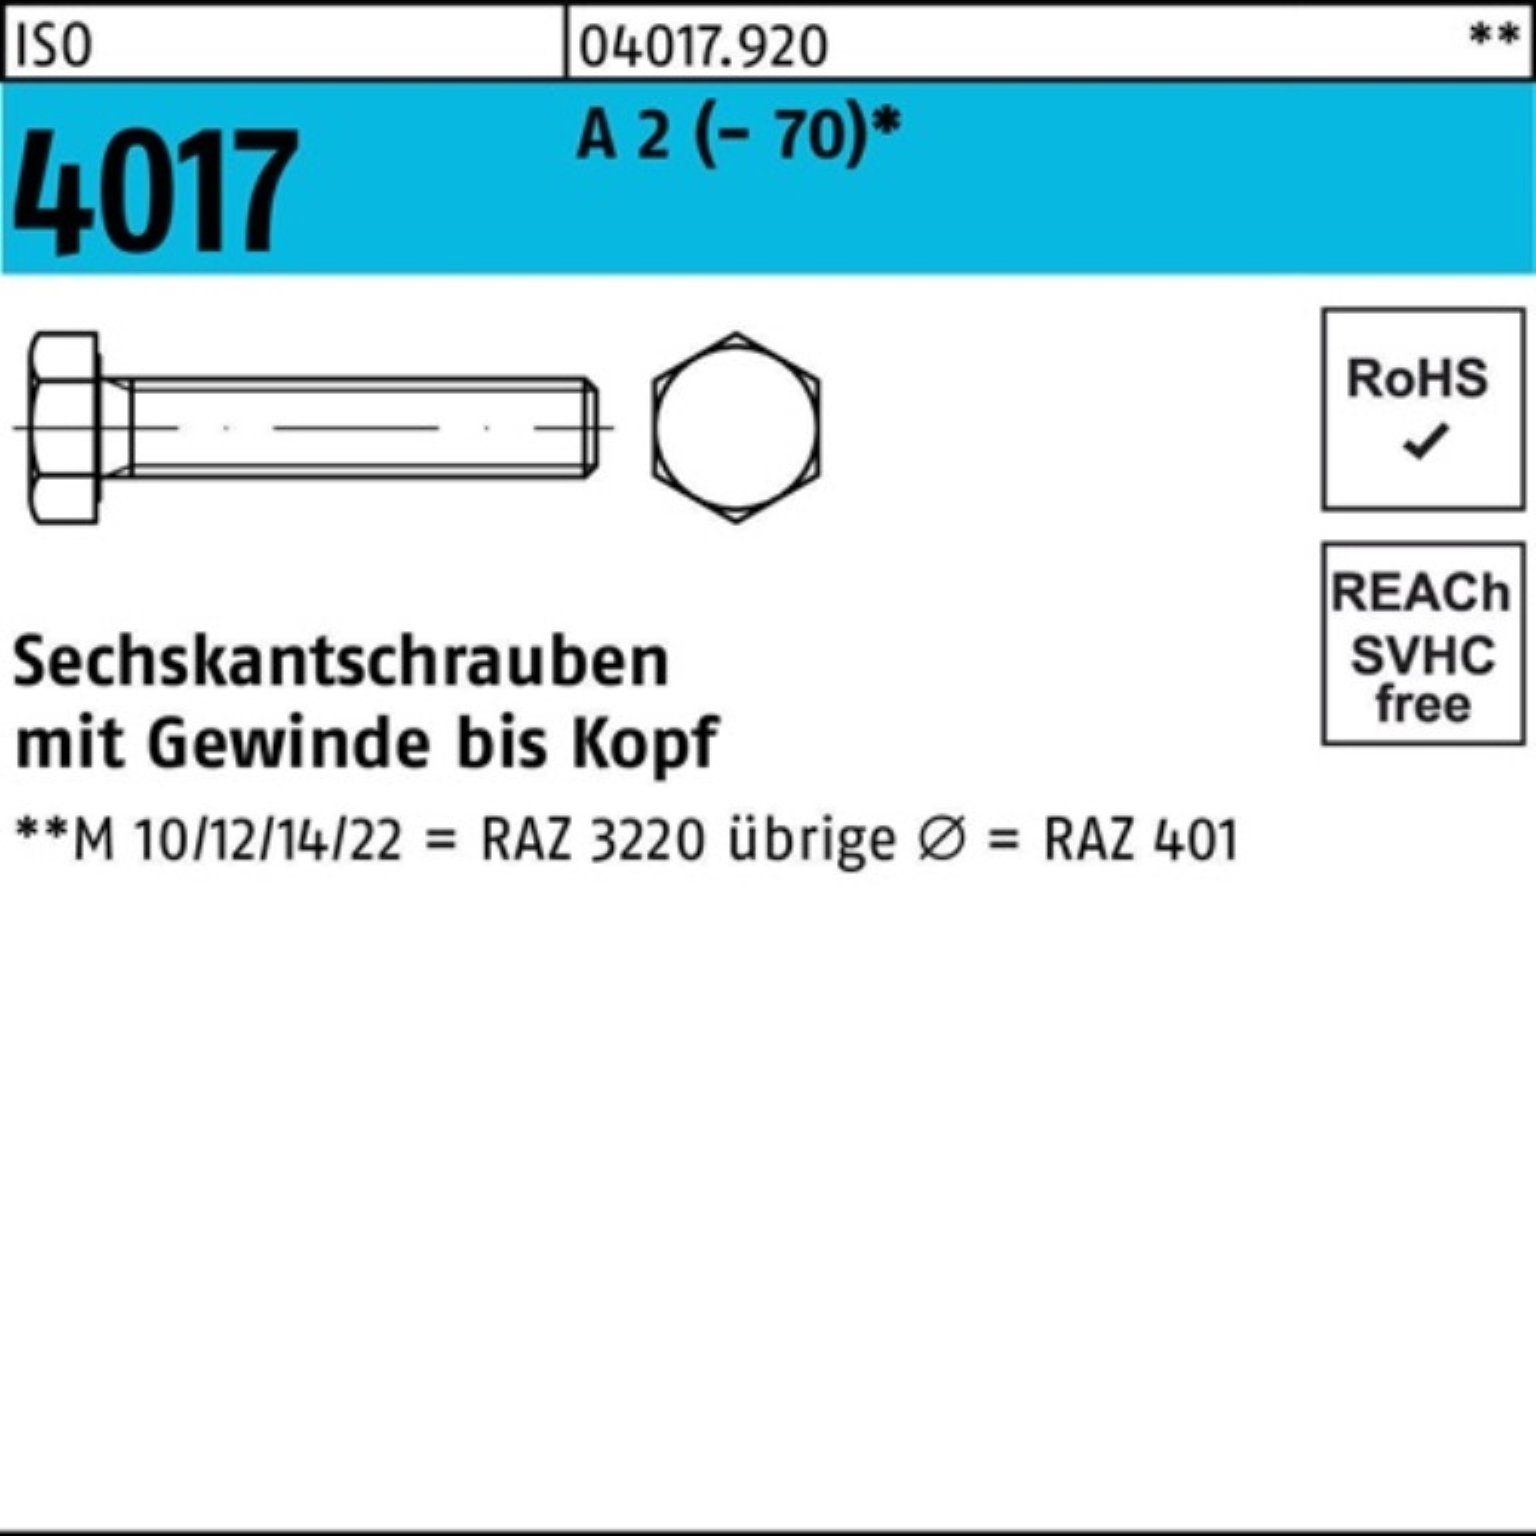 Bufab Sechskantschraube 100er Pack Sechskantschraube ISO 4017 VG M36x 150 A 2 (70) 1 Stück